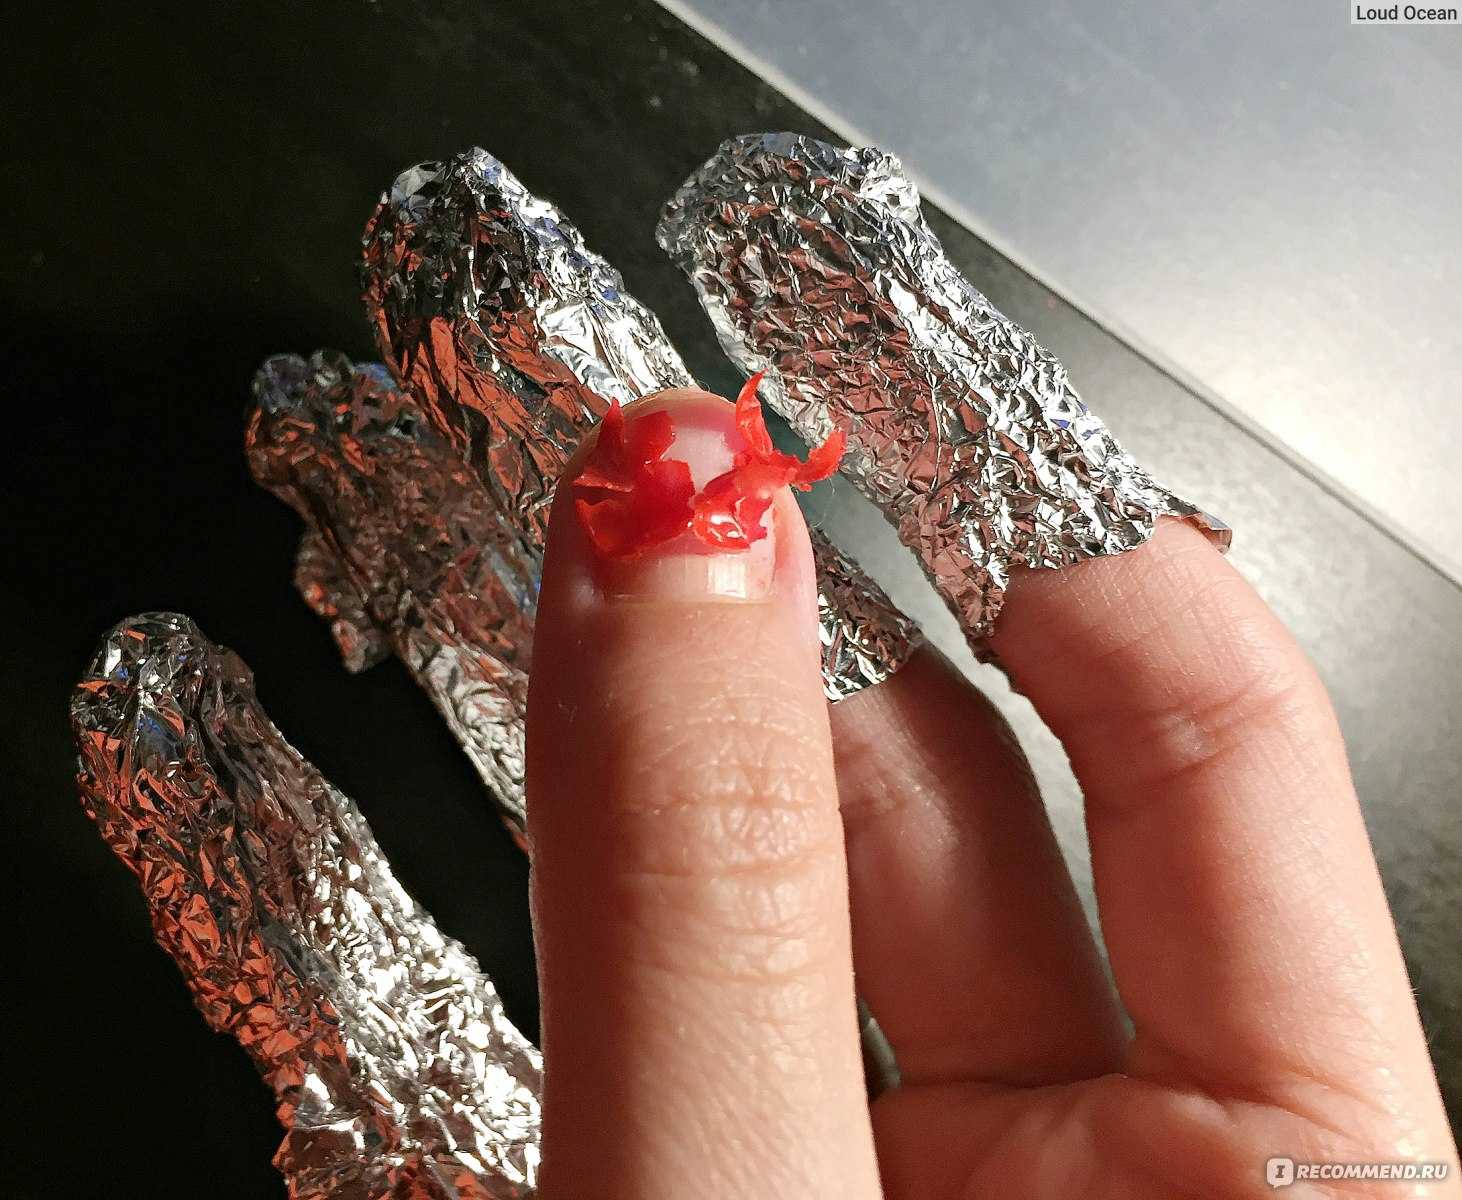 Как снять нарощенные ногти самостоятельно в домашних условиях, особенности снятия акрила и гель лака